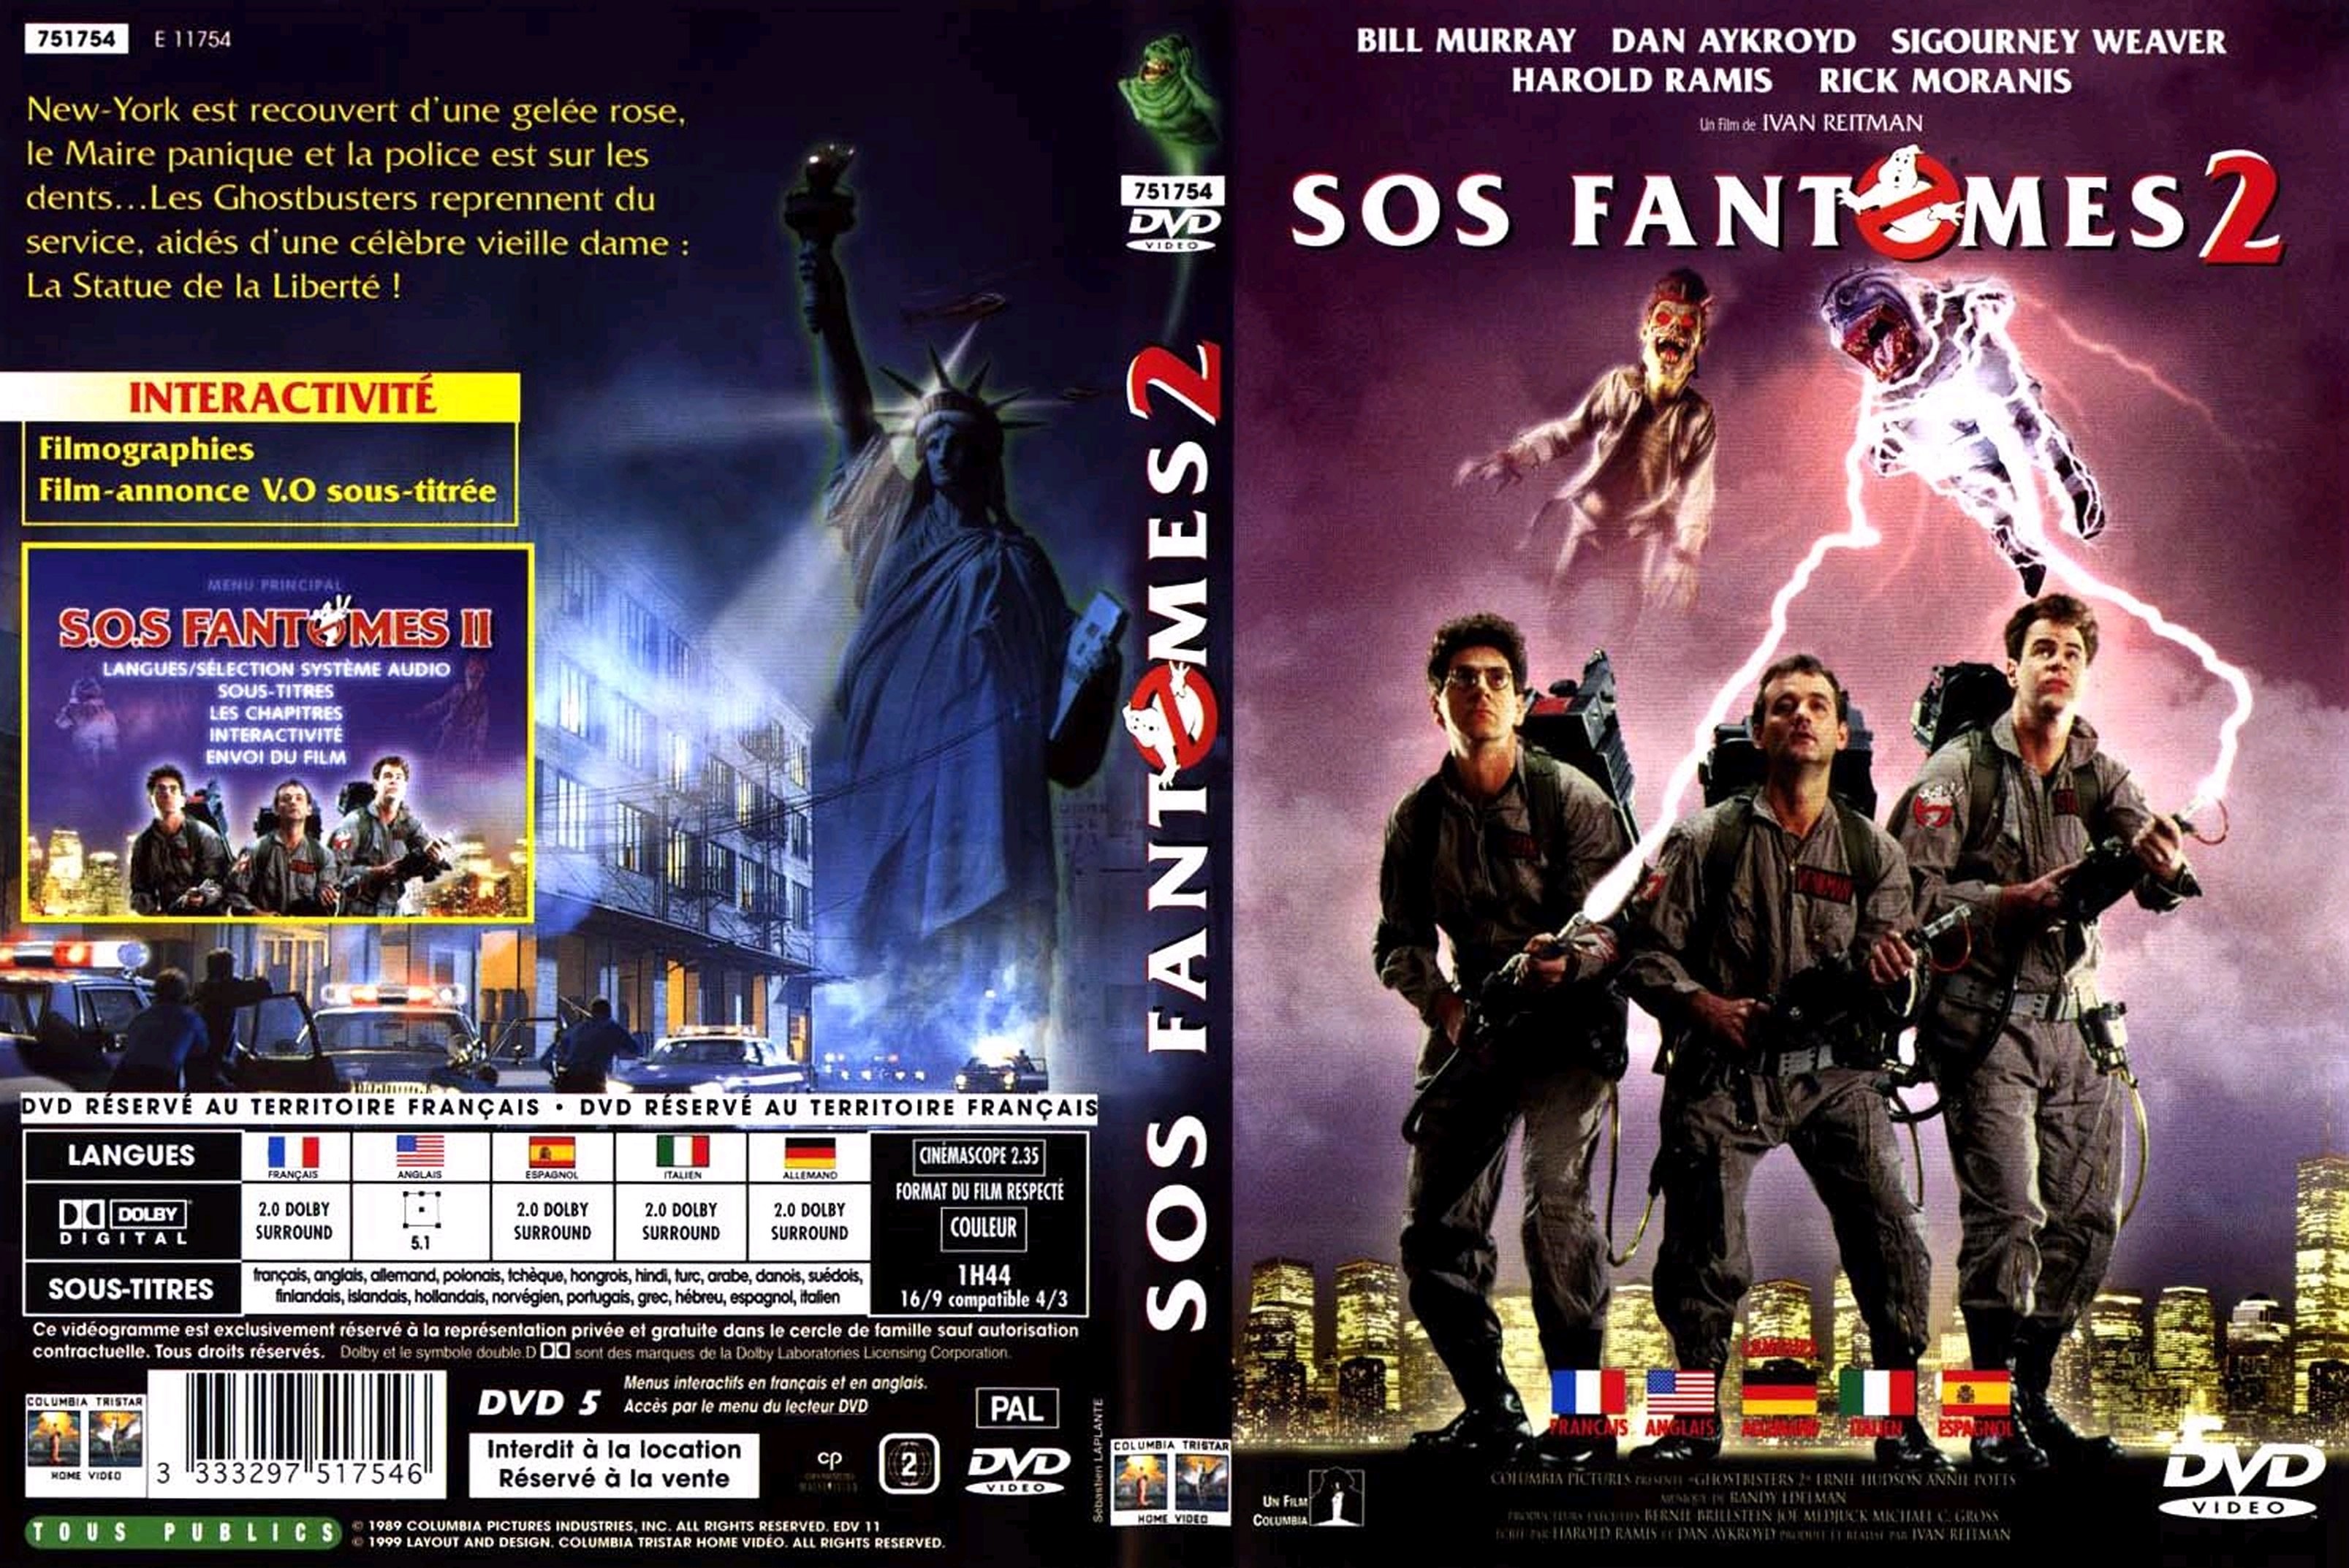 Jaquette DVD SOS fantomes 2 v2